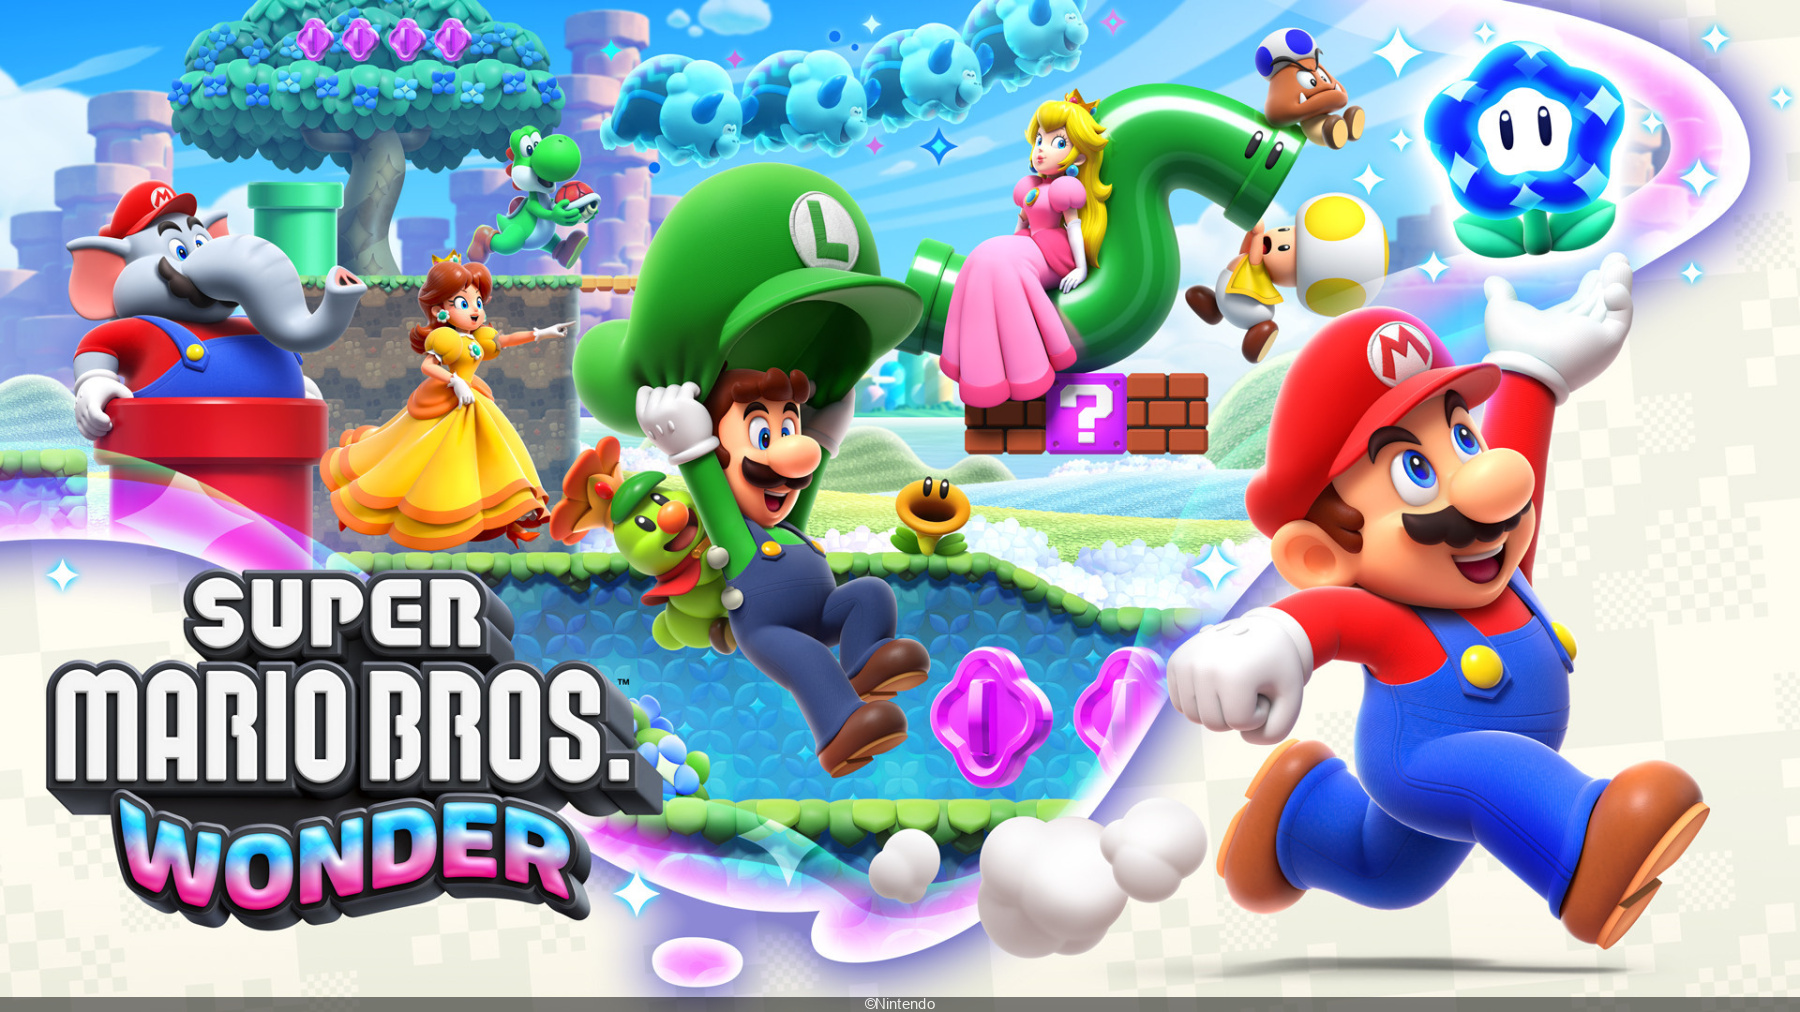 Criador de 'Super Mario' não é fã de jogos gratuitos